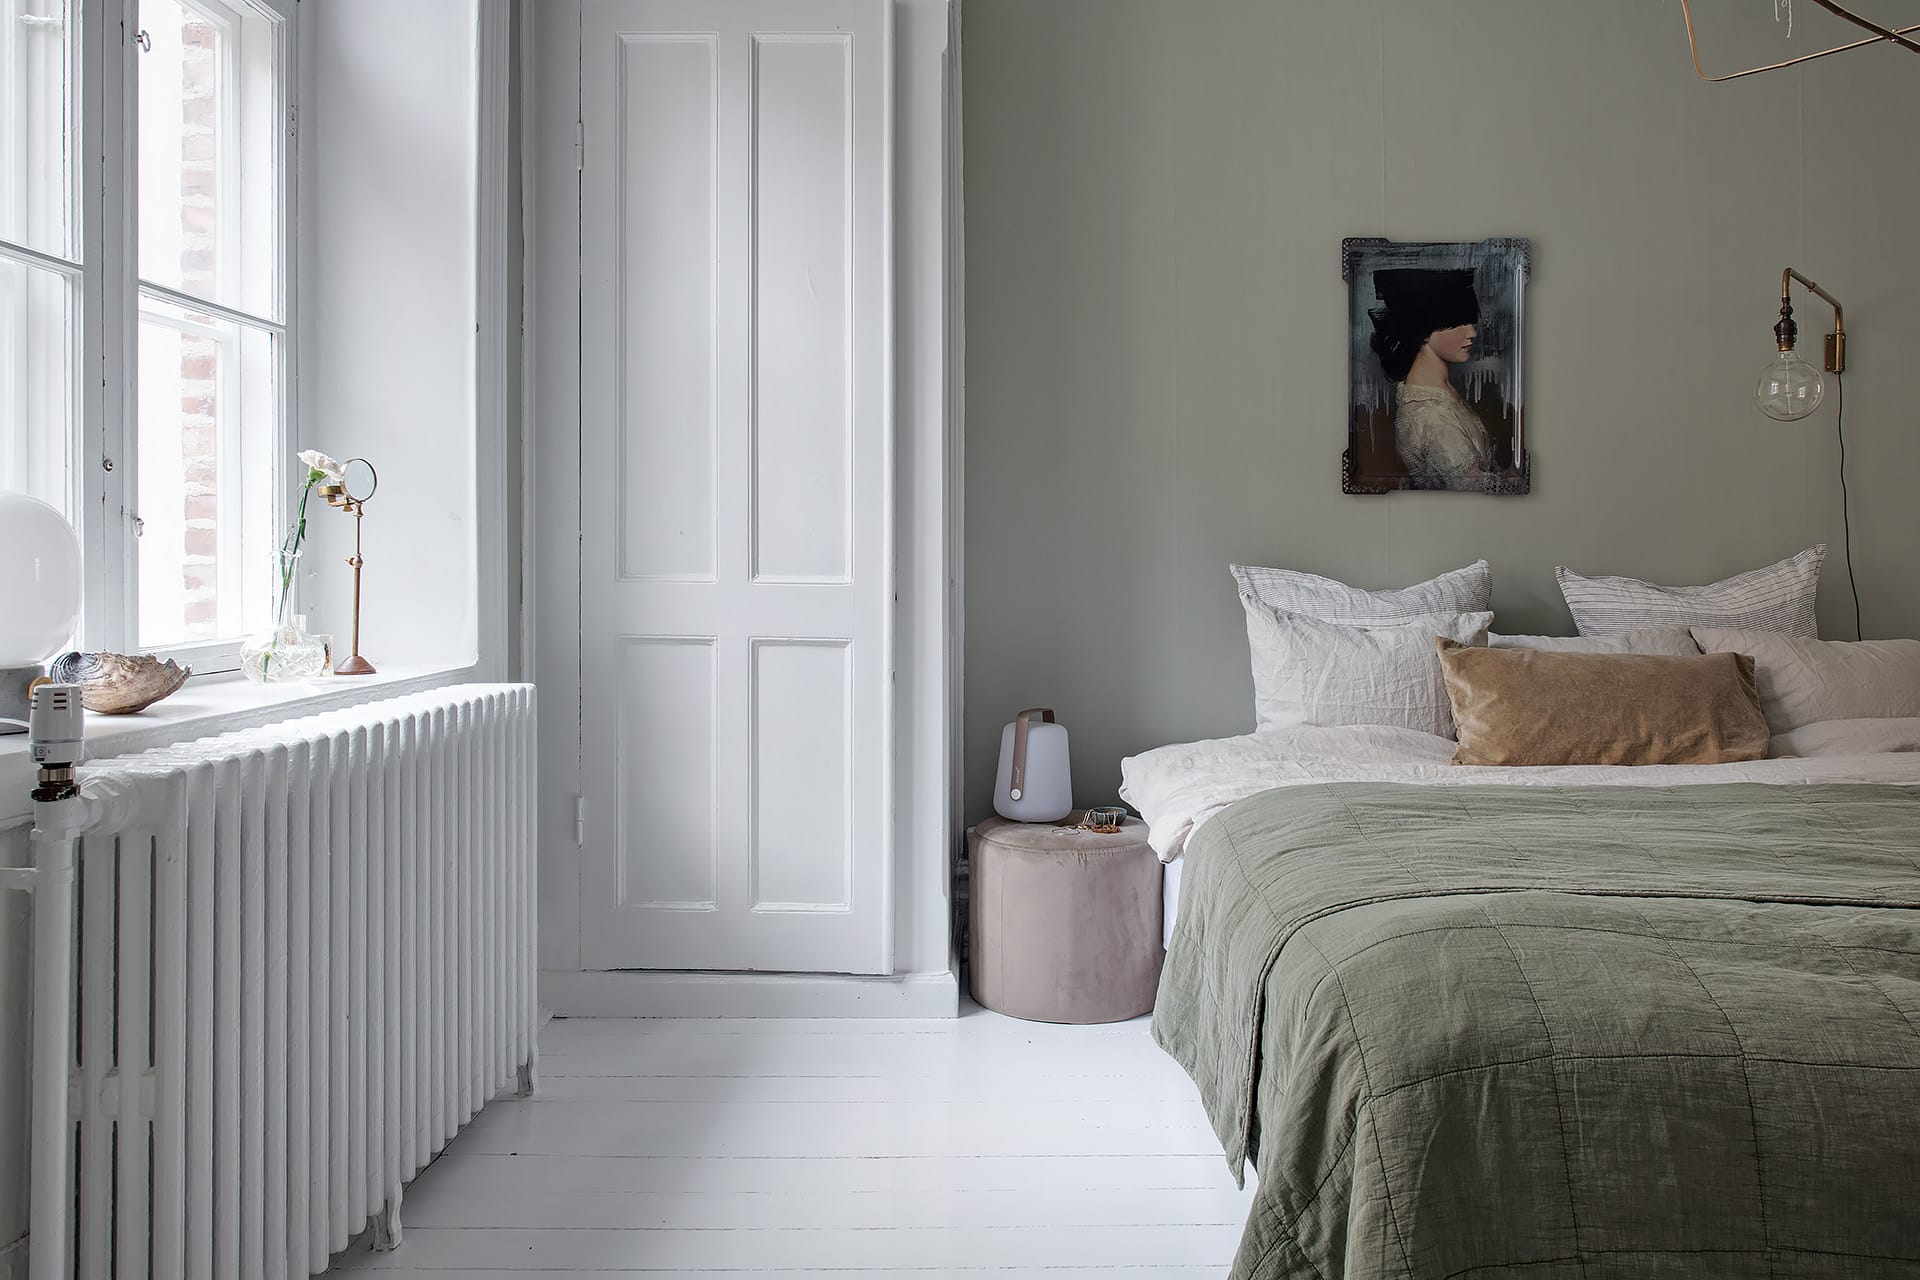 Interior kamar tidur dengan perpaduan warna putih dan sage green, via Cocolapindesign